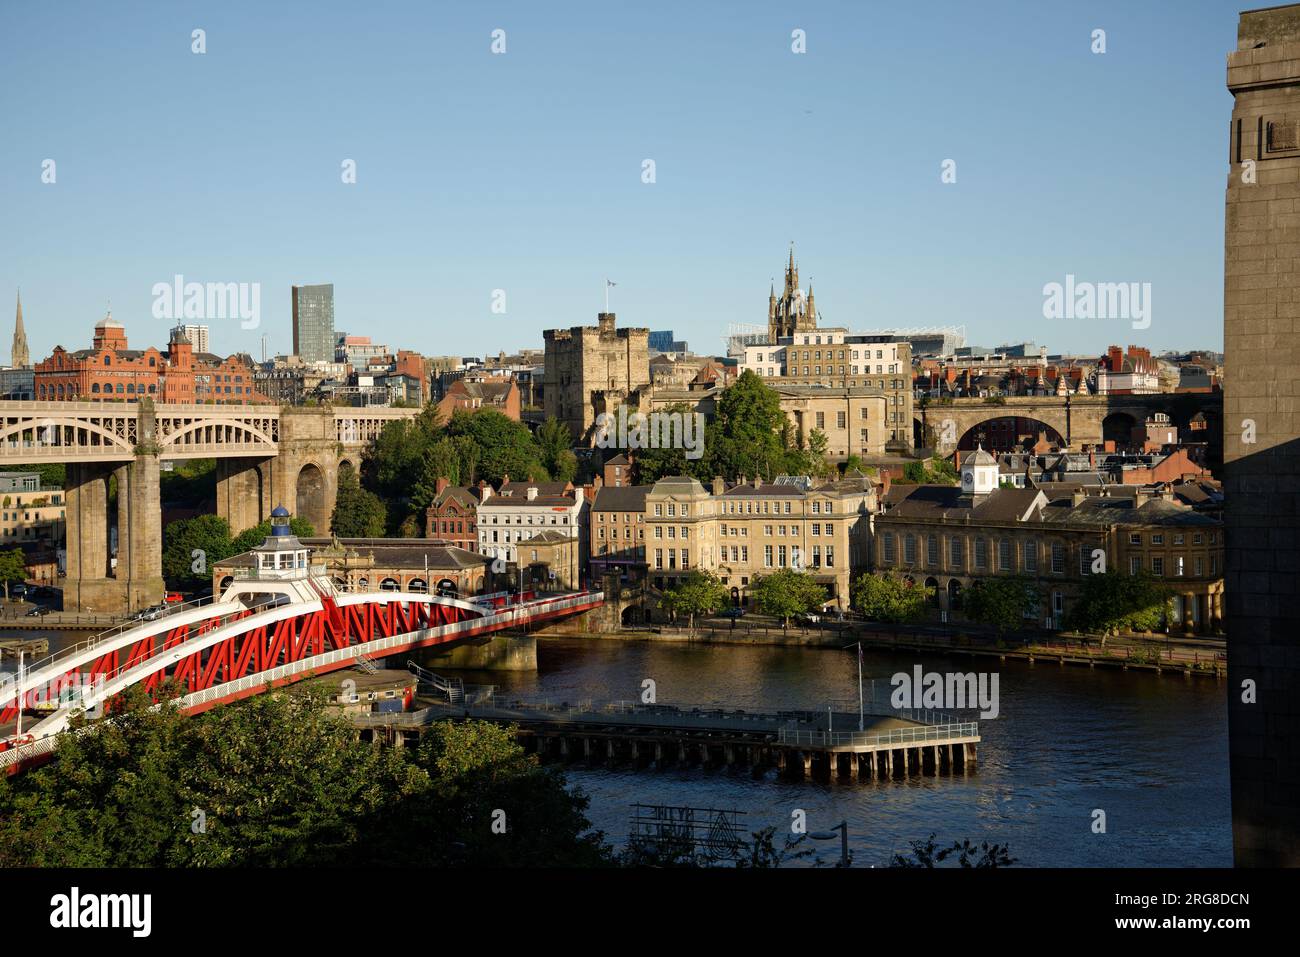 Die Swing Bridge in Newcastle. Rot-weiß bemalte Metallbrücke über den Fluss Tyne. Newcastle City im Hintergrund mit dem Fußballstadion. Stockfoto